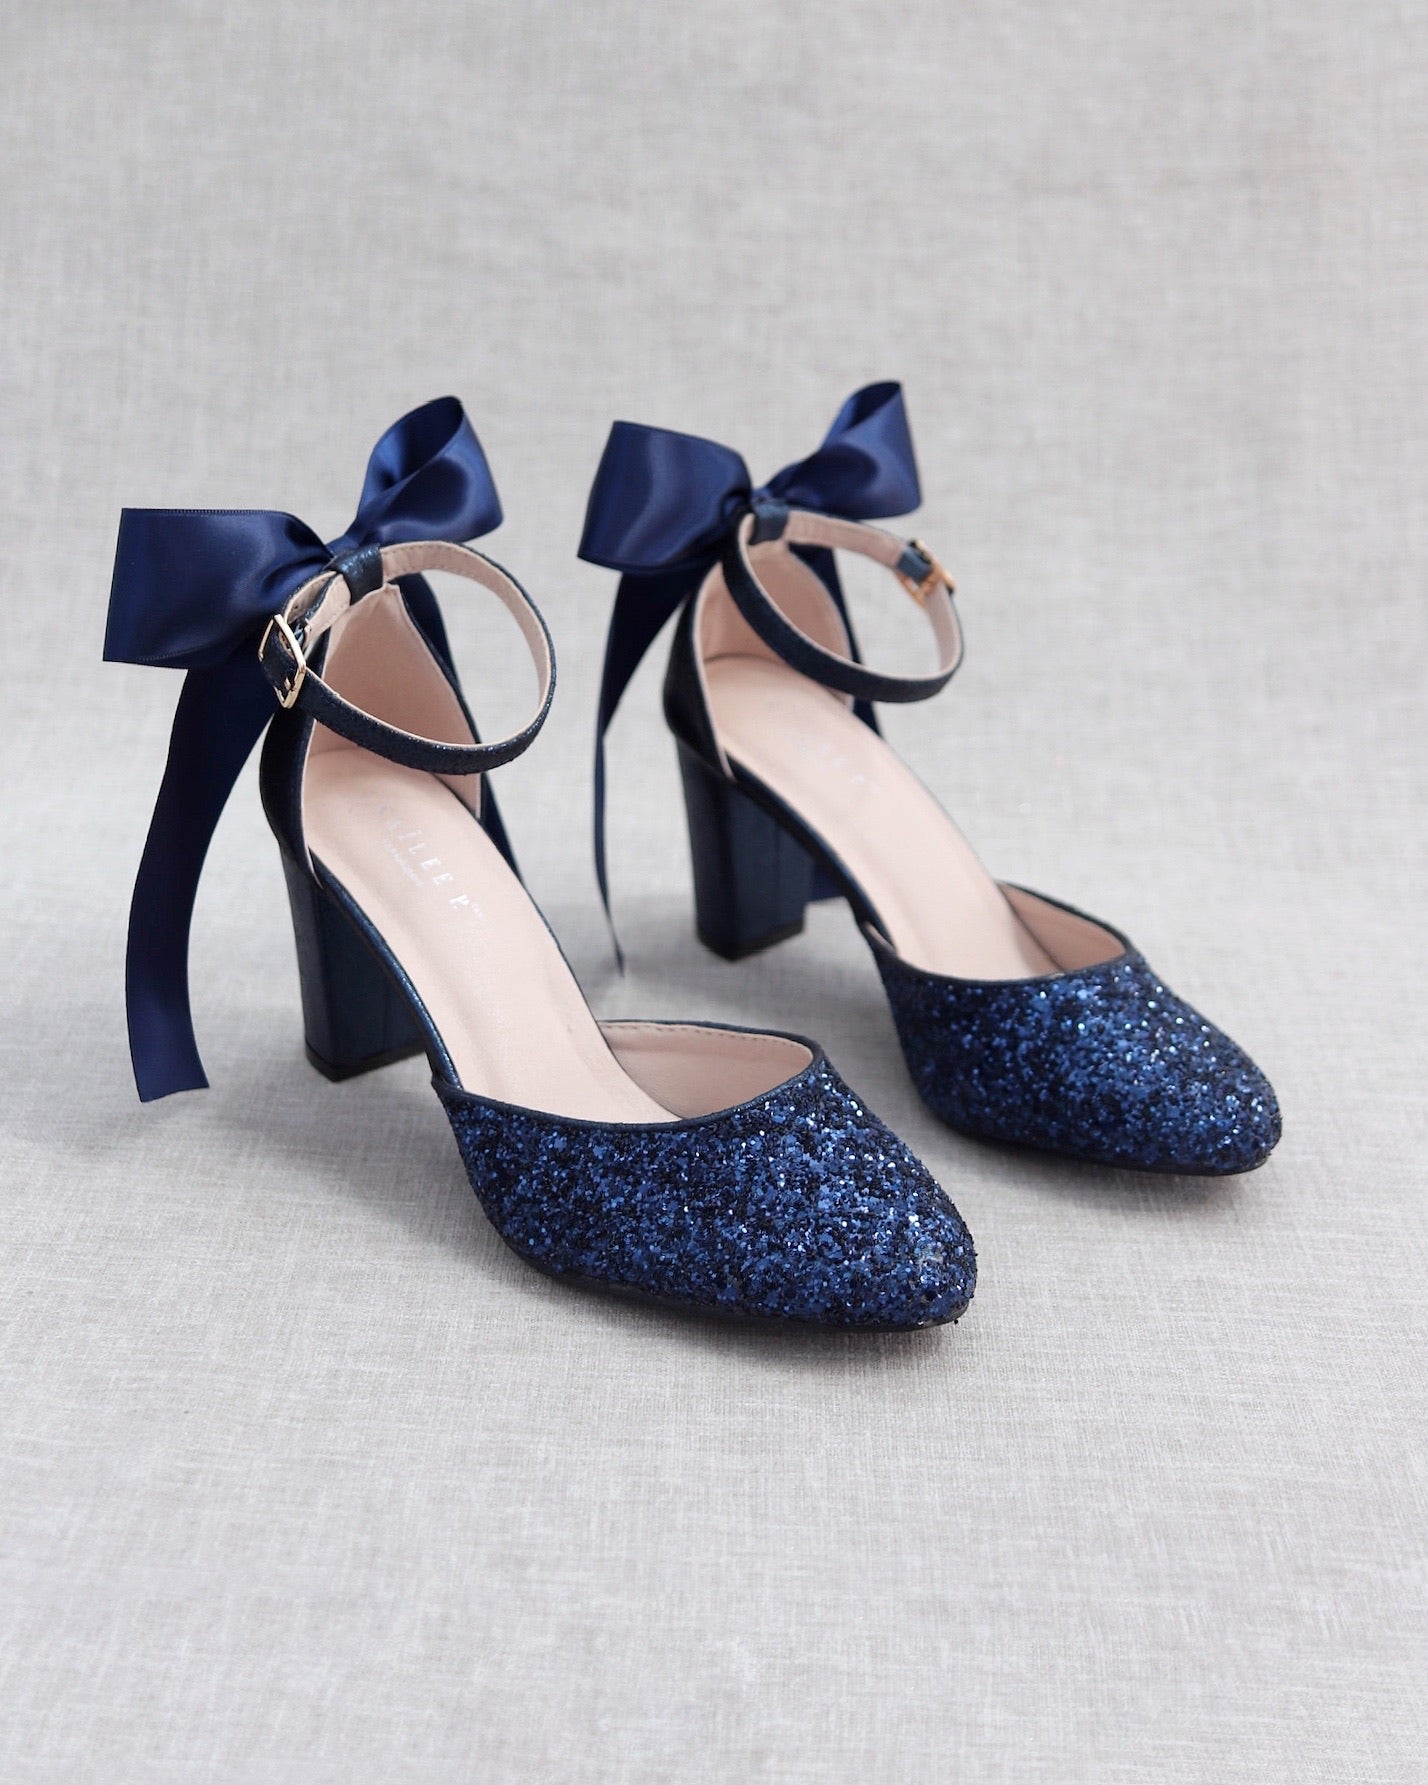 Buy Glitter Heels / Midnight Blue Glitter Heels / Wedding Shoes / Sparkle  Heels / Sparkly Shoes / Wedding Heels / Women's Pumps / Women's Shoes  Online in India - Etsy